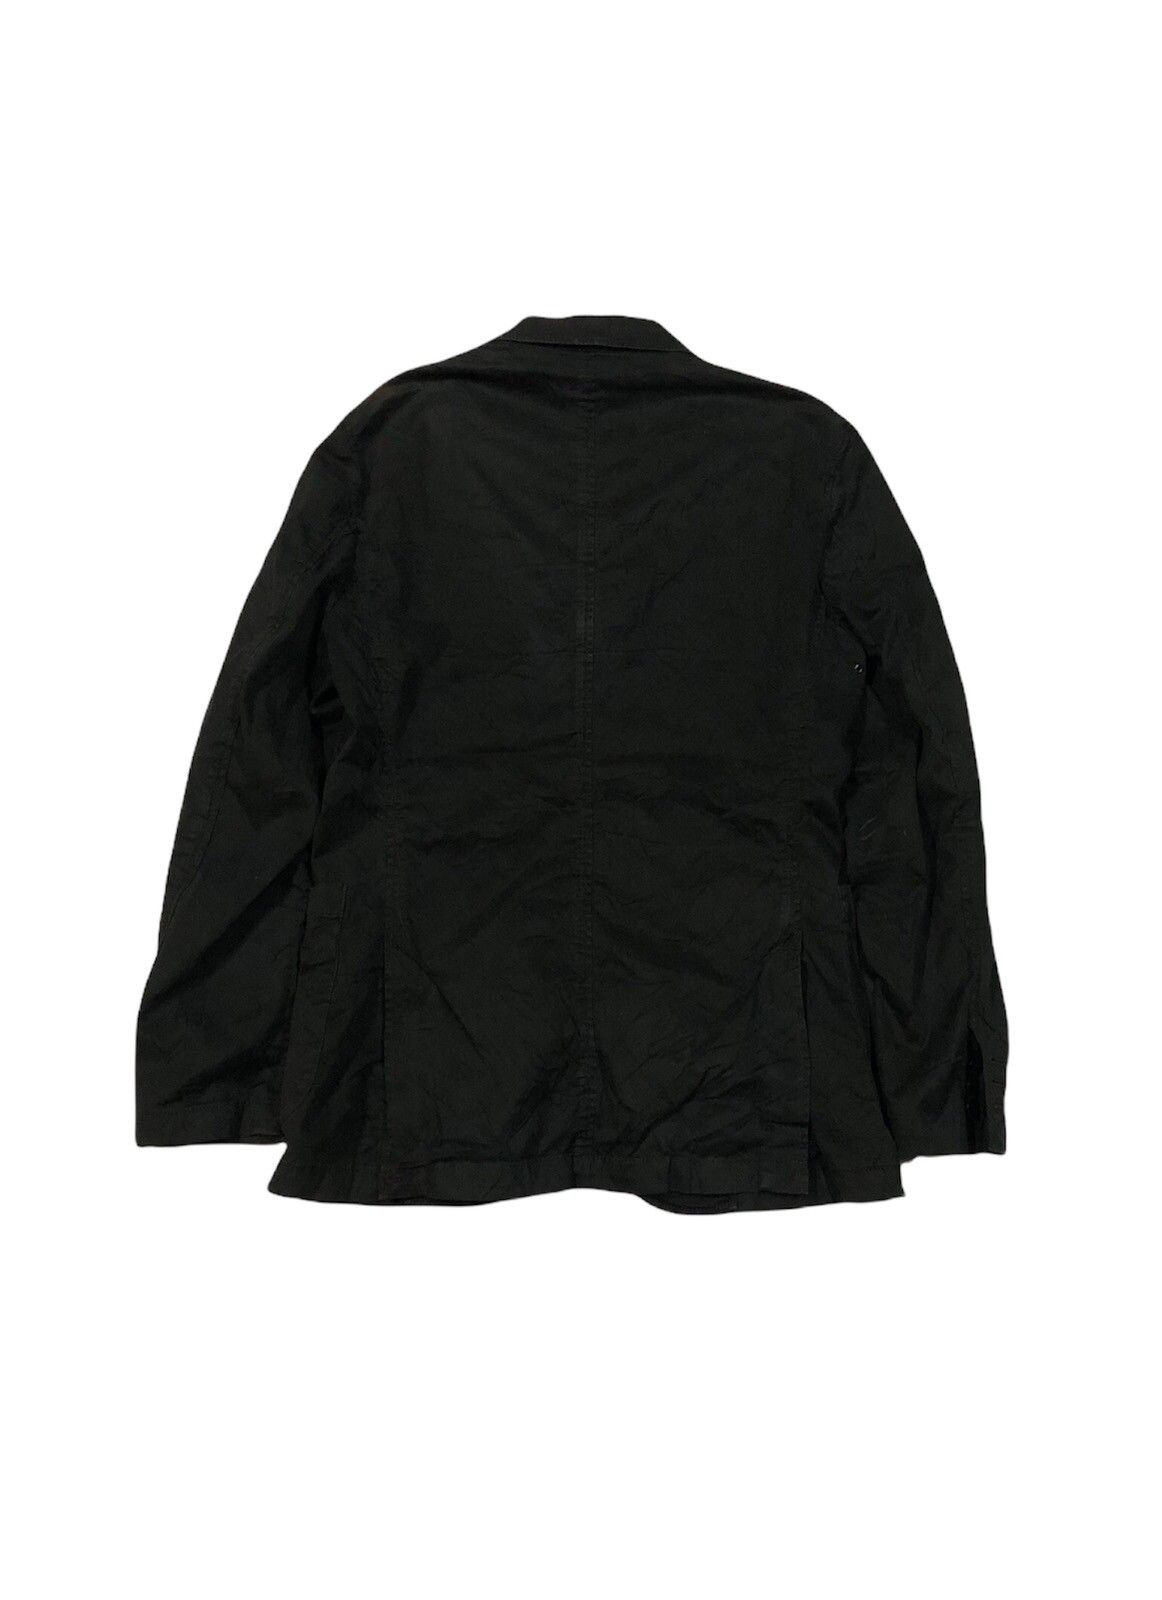 💣Japanese sophnet jacket - 2